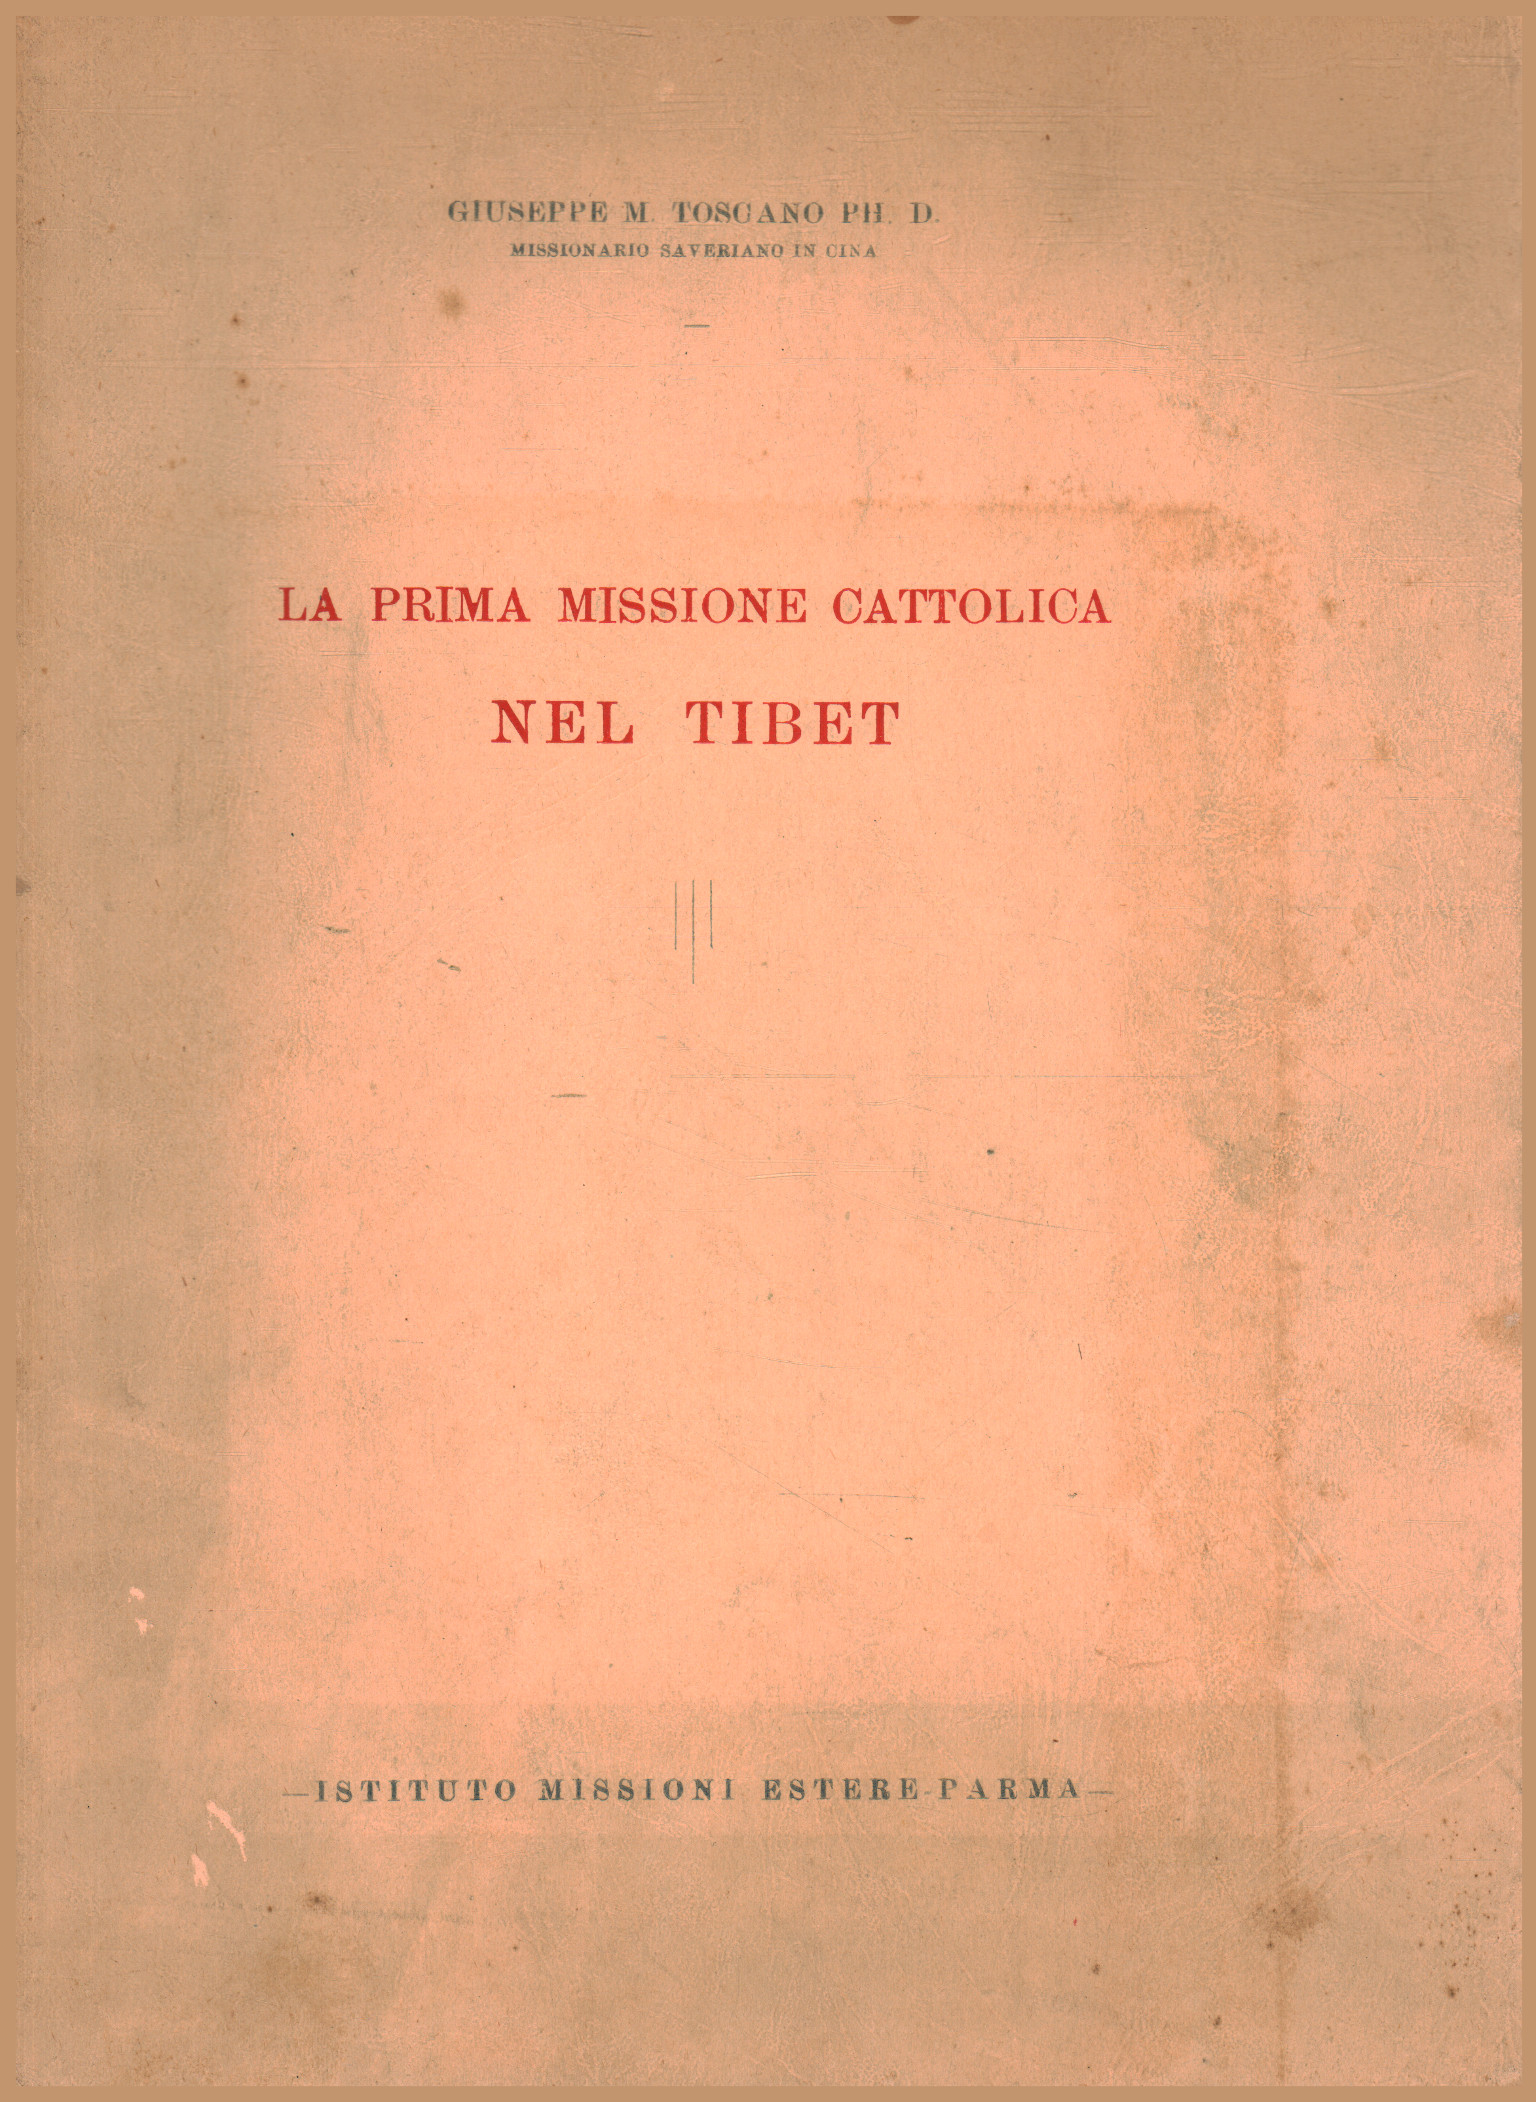 La première mission catholique au Tibet, Giuseppe M. Toscano